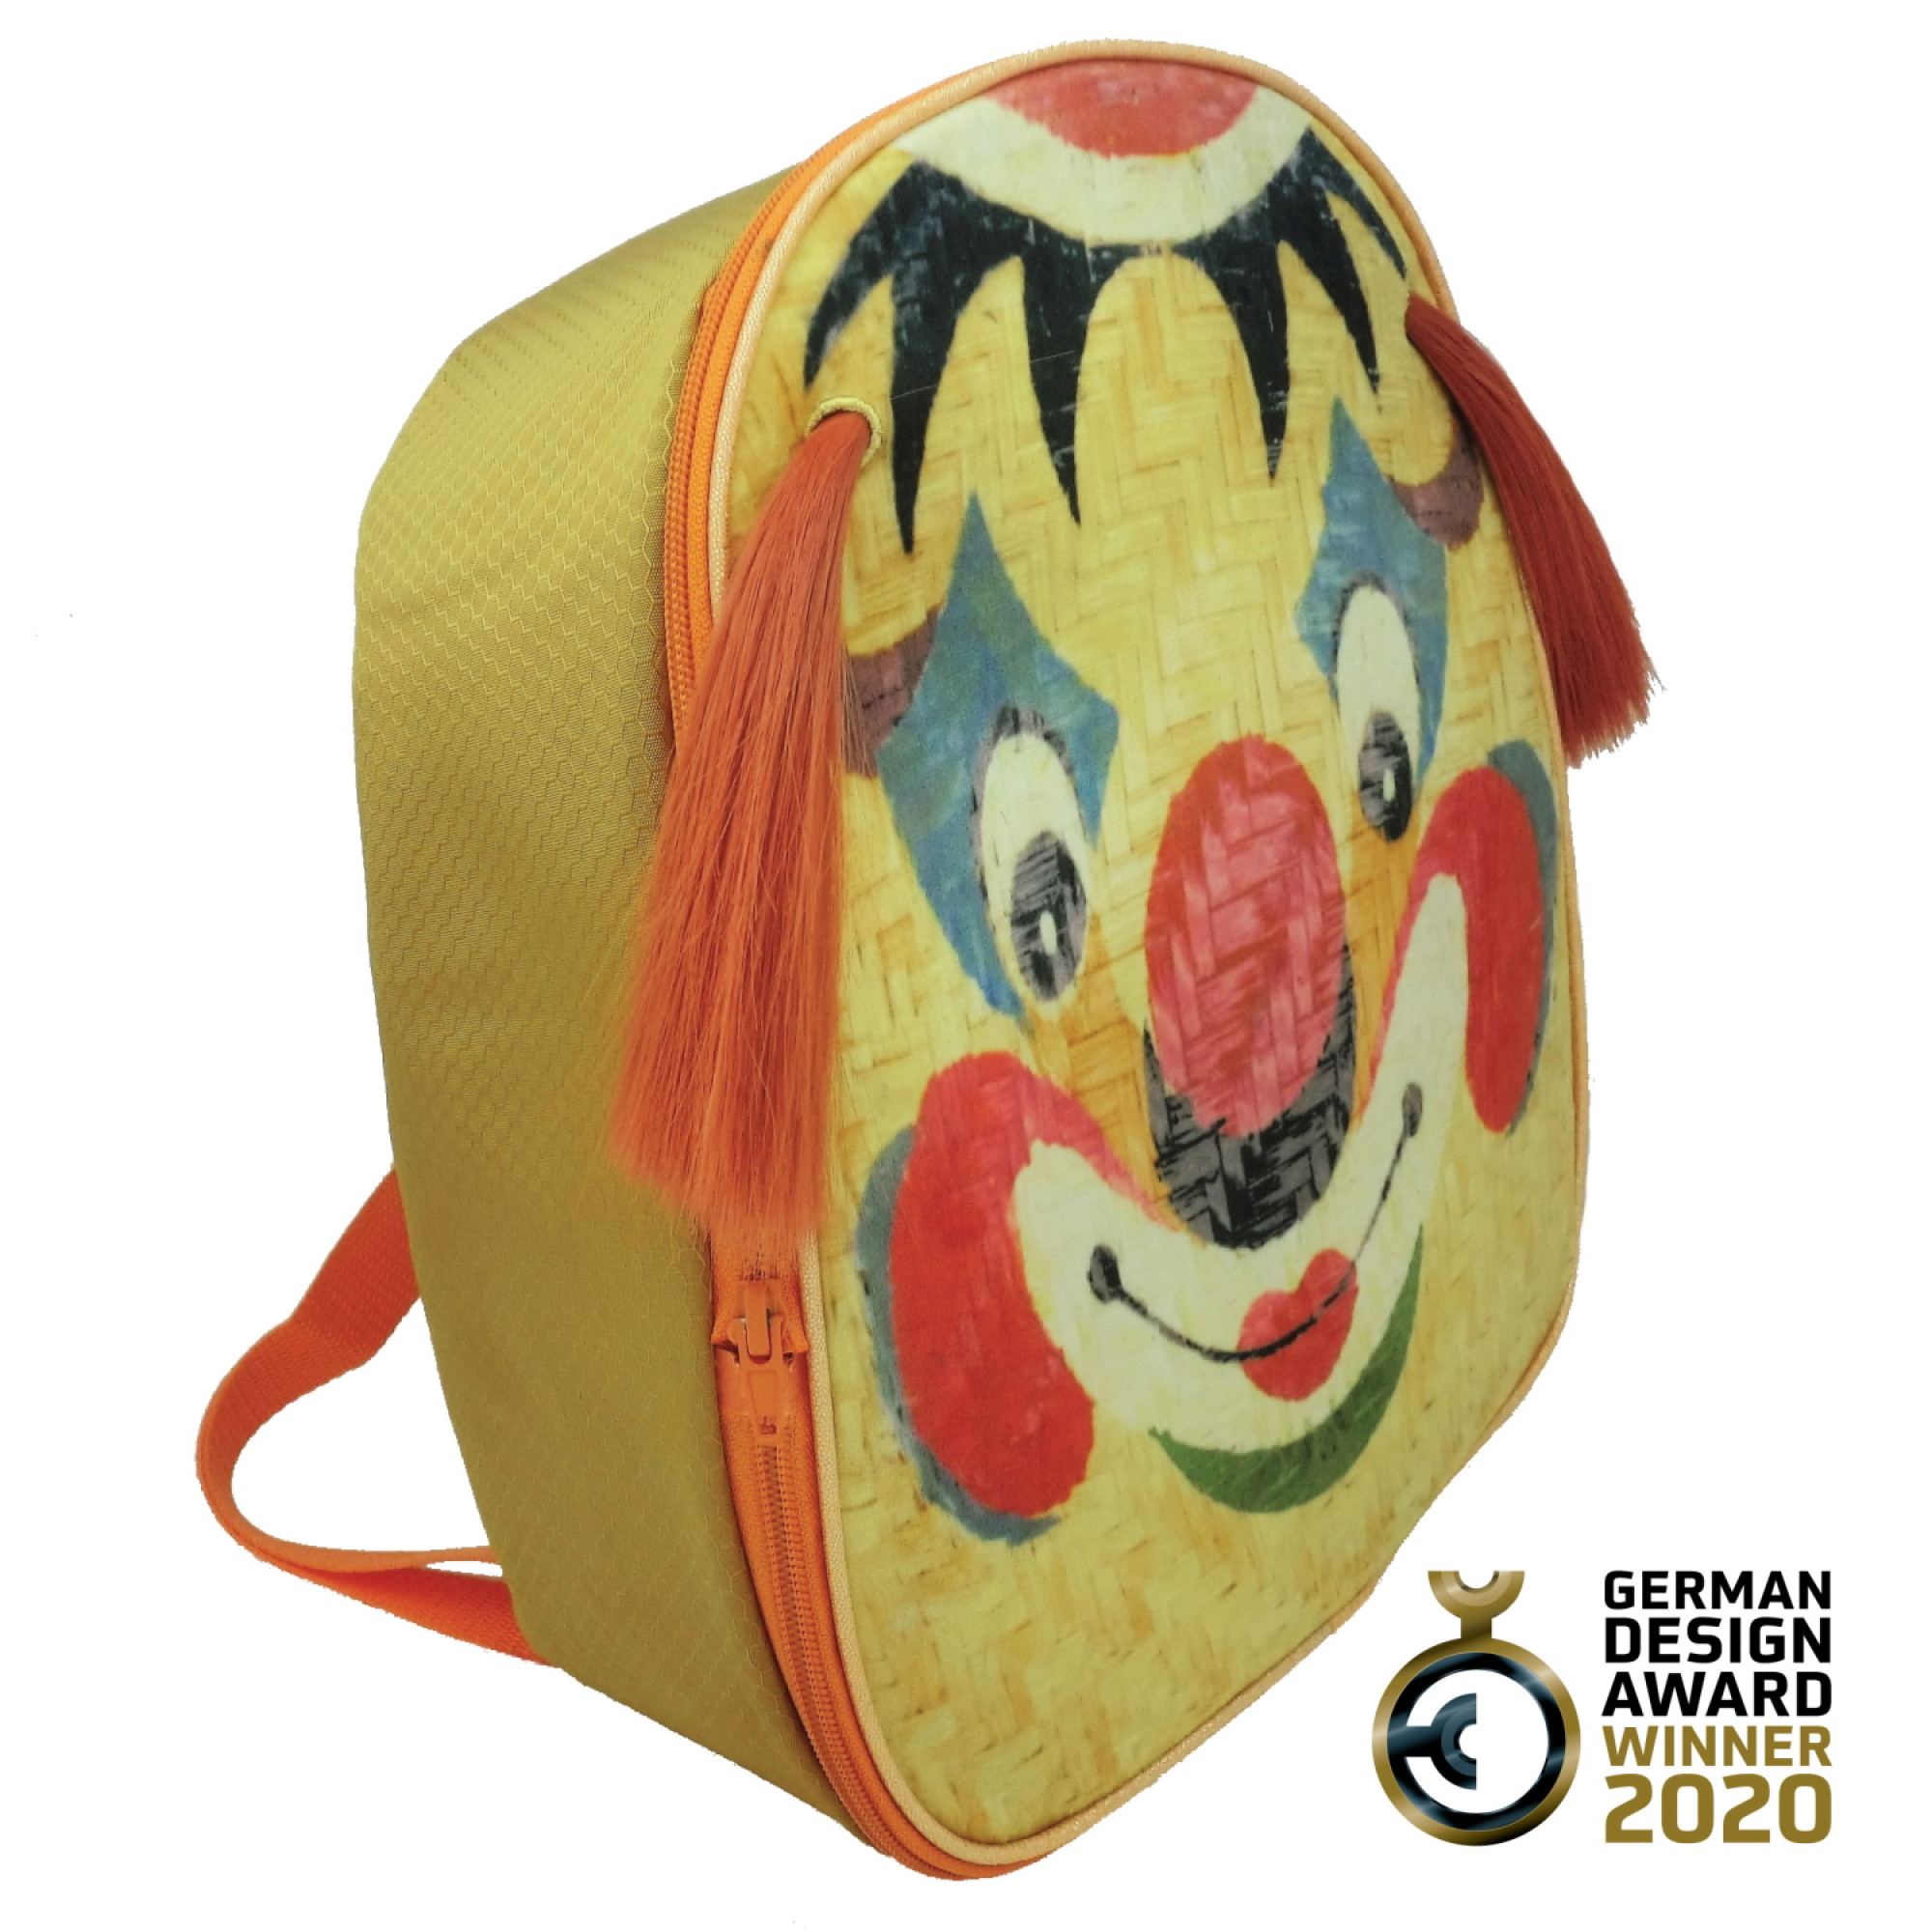 《马戏团×京戏》小丑脸谱双肩背包-FOBP2321